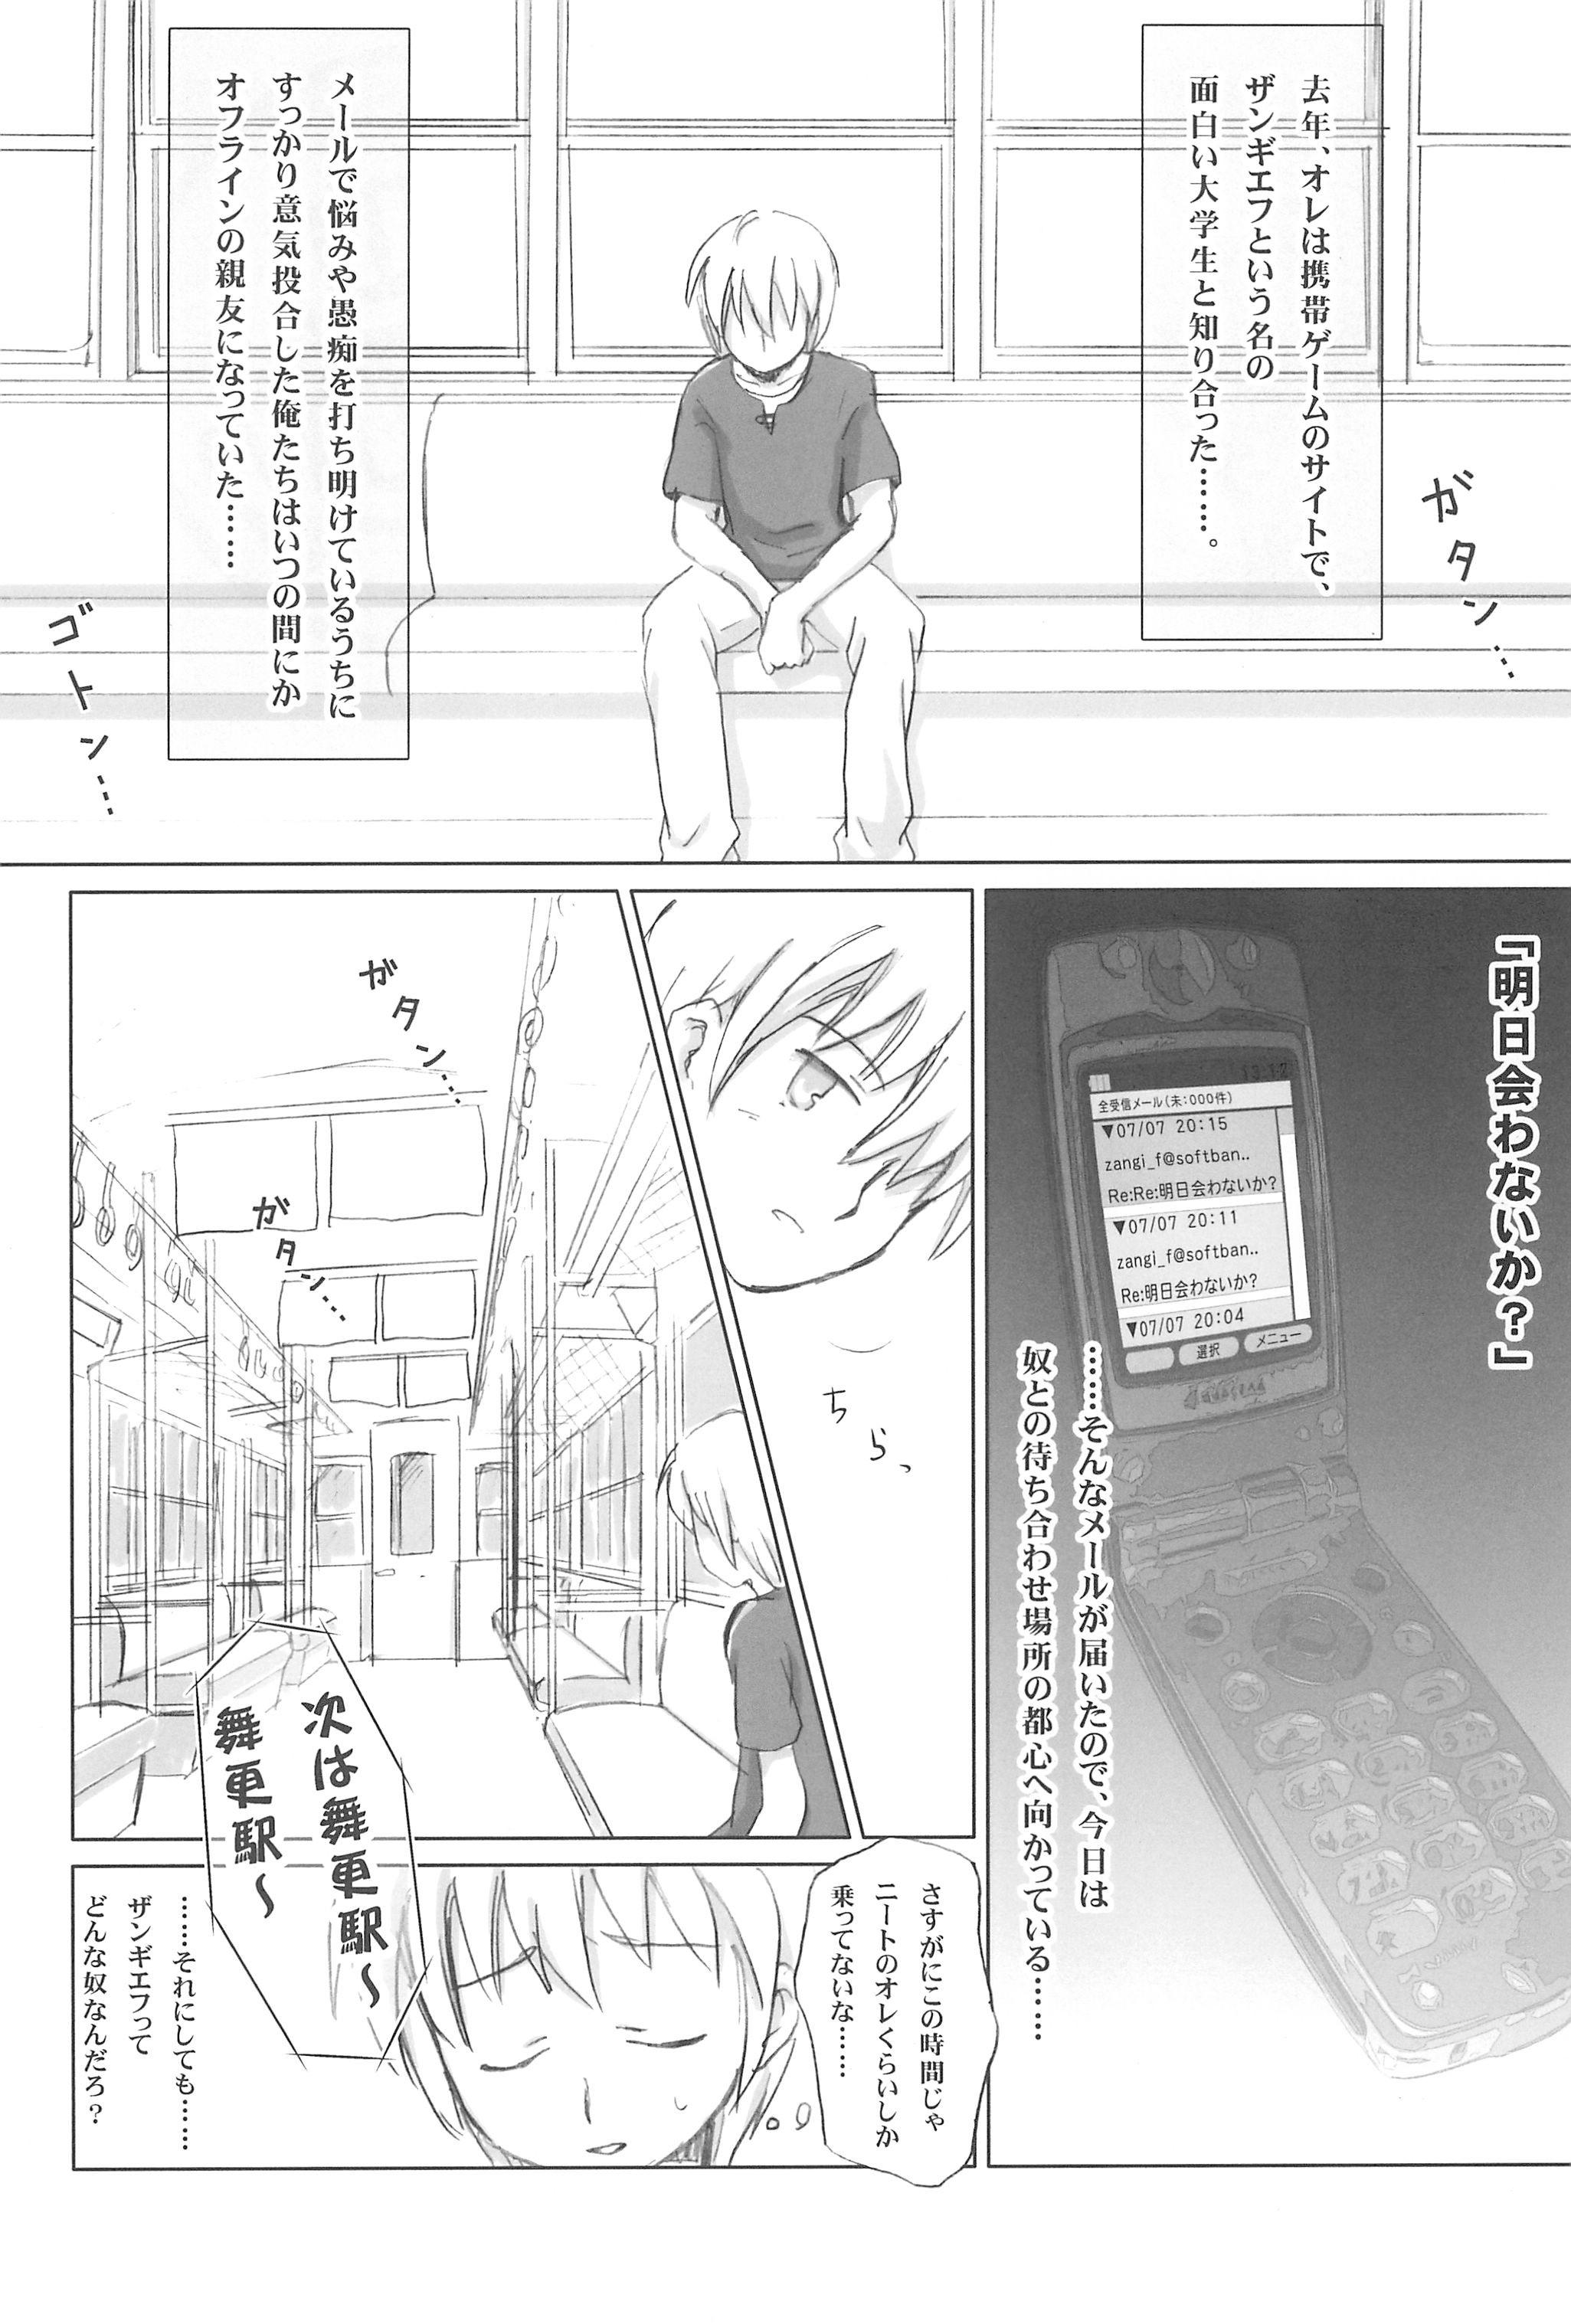 Bra Mazarashi no Hon 4 "Lolikko no Yatsu" Interacial - Page 4